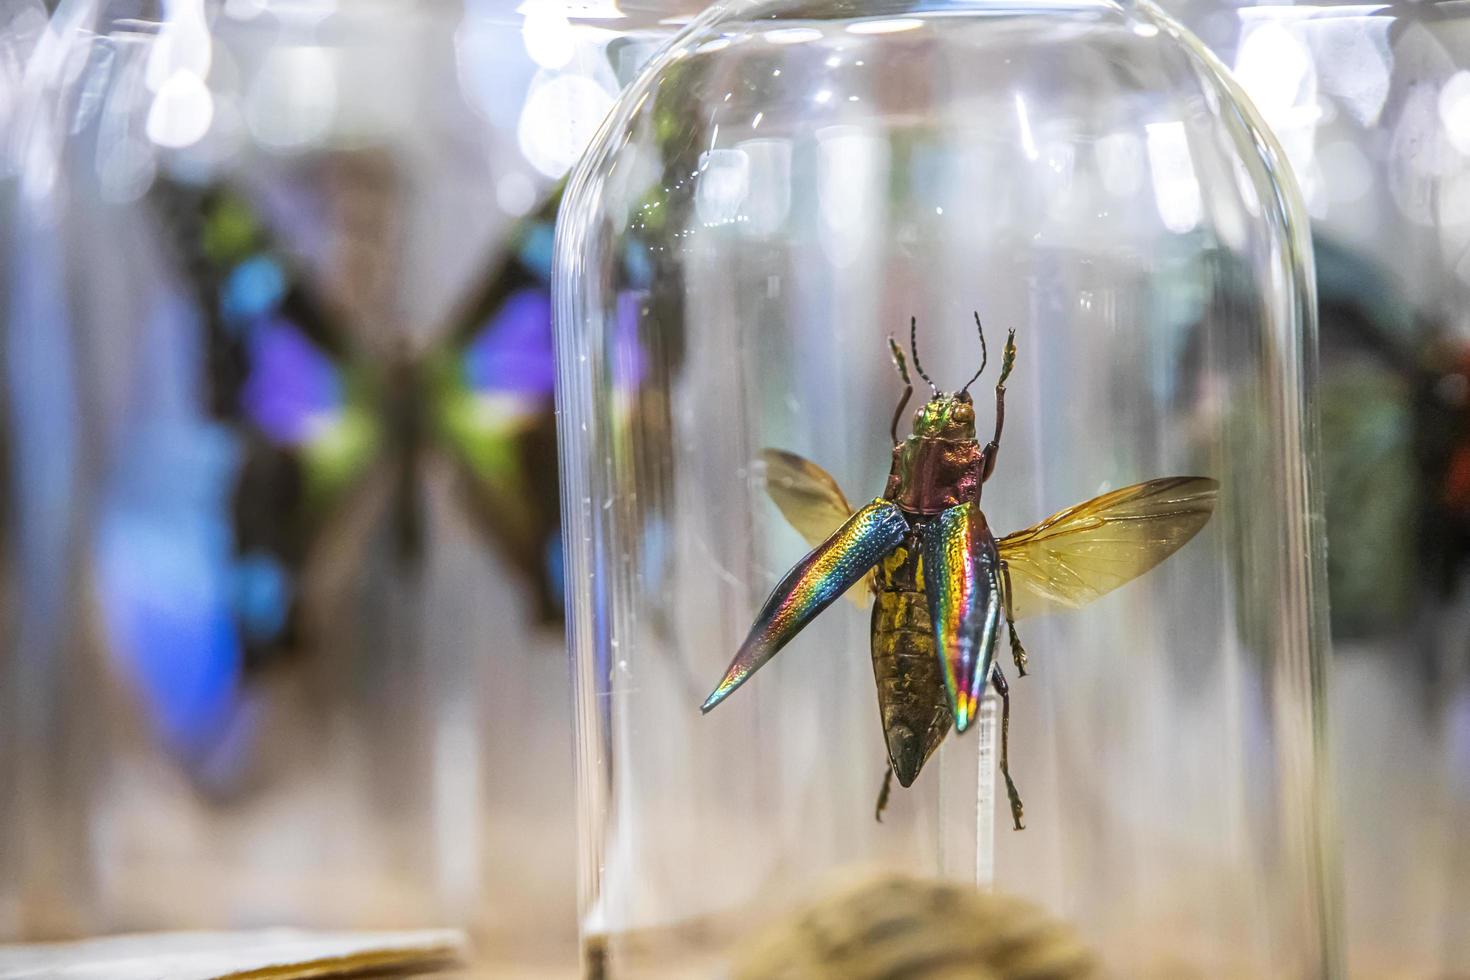 Primer plano de un insecto en un frasco de vidrio en una tienda foto